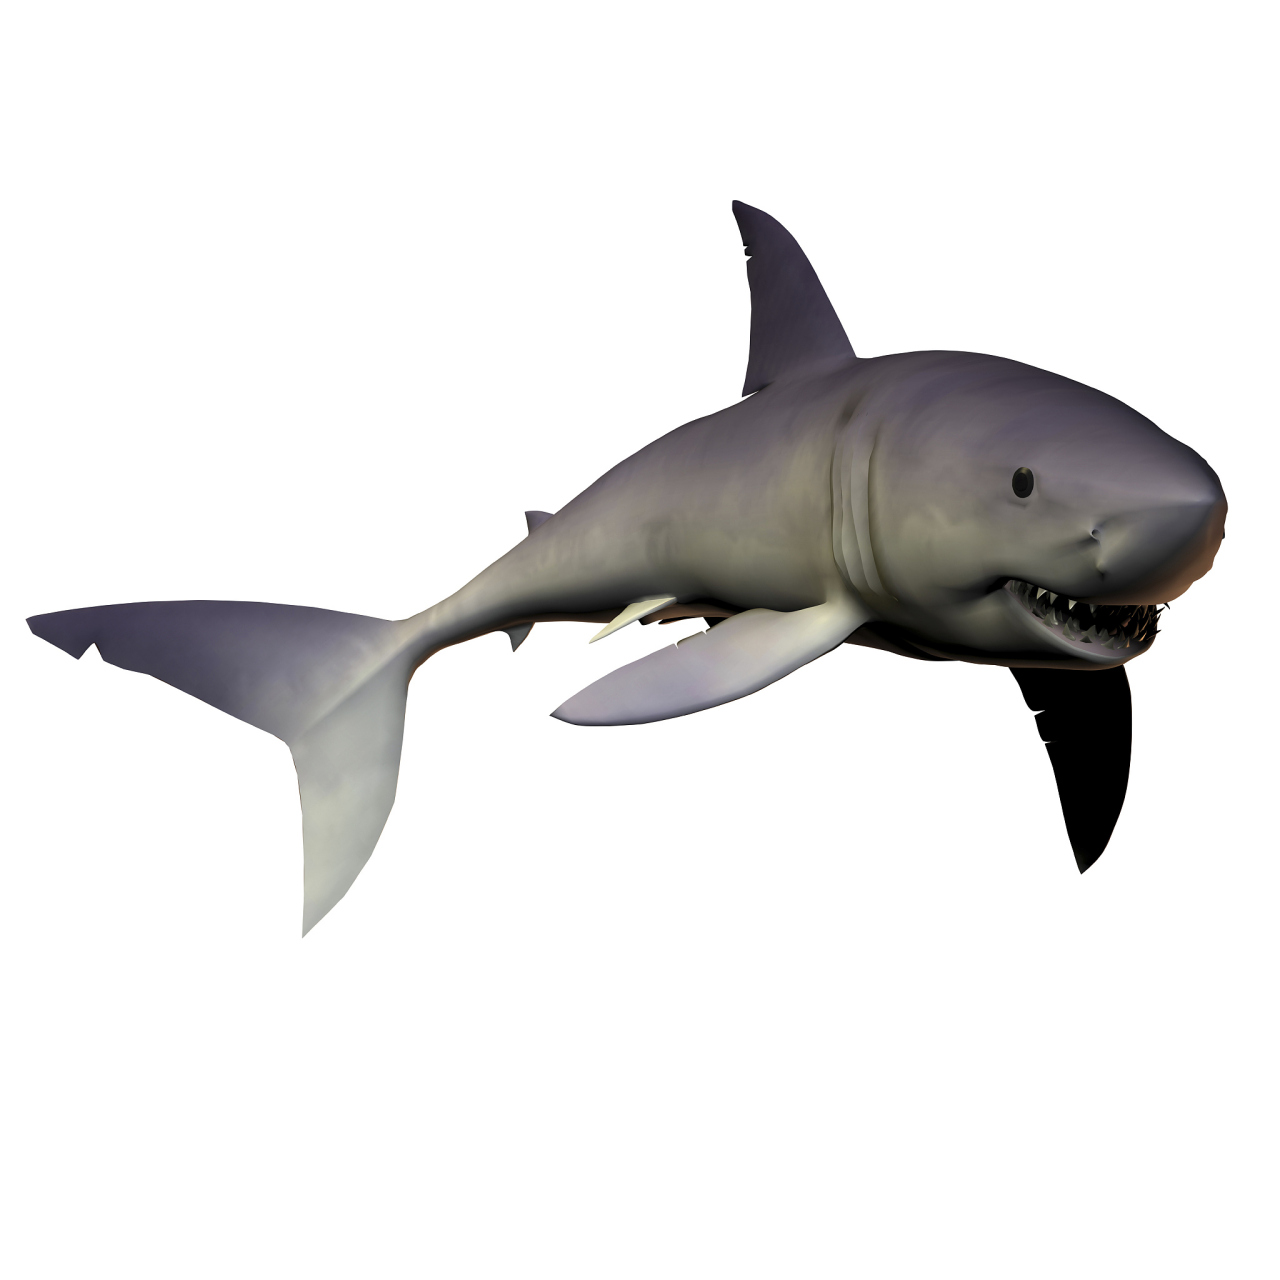 灰鲭鲨不管在大白鲨中而言,或是和其他海底生物对比,全是一个当之无愧